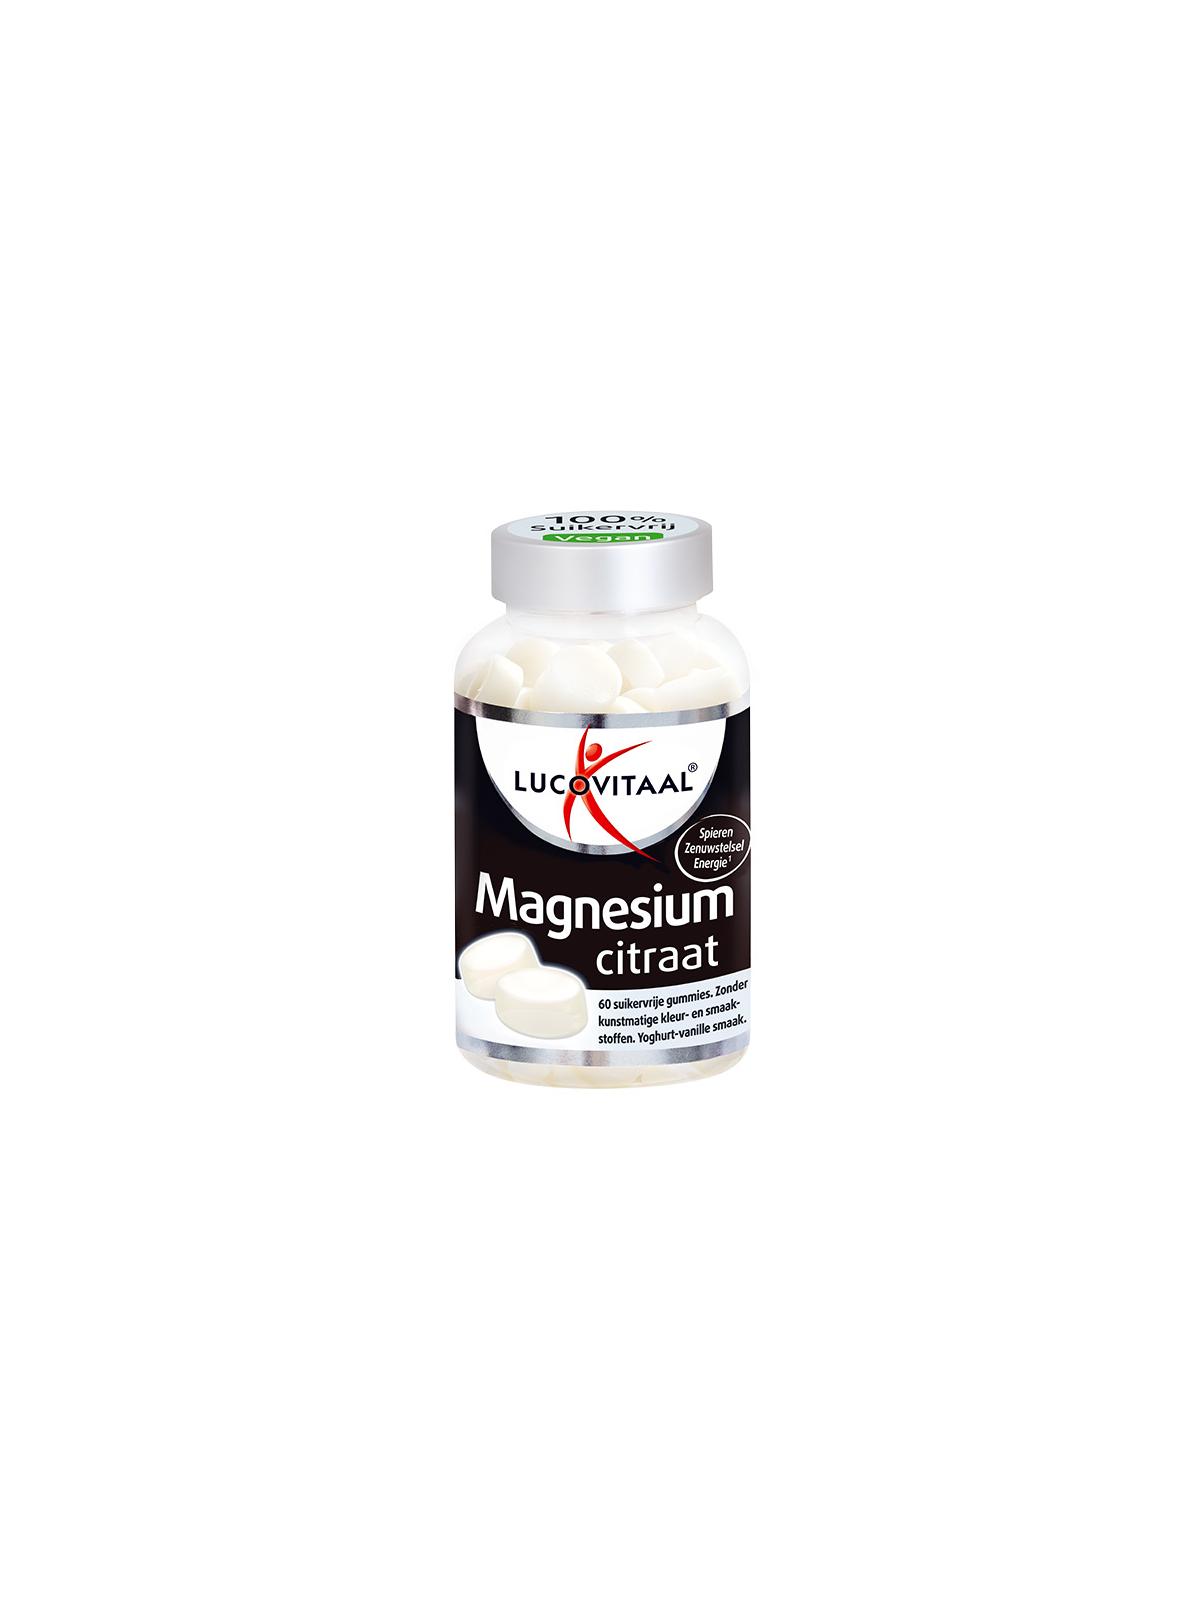 Magnesium gummie